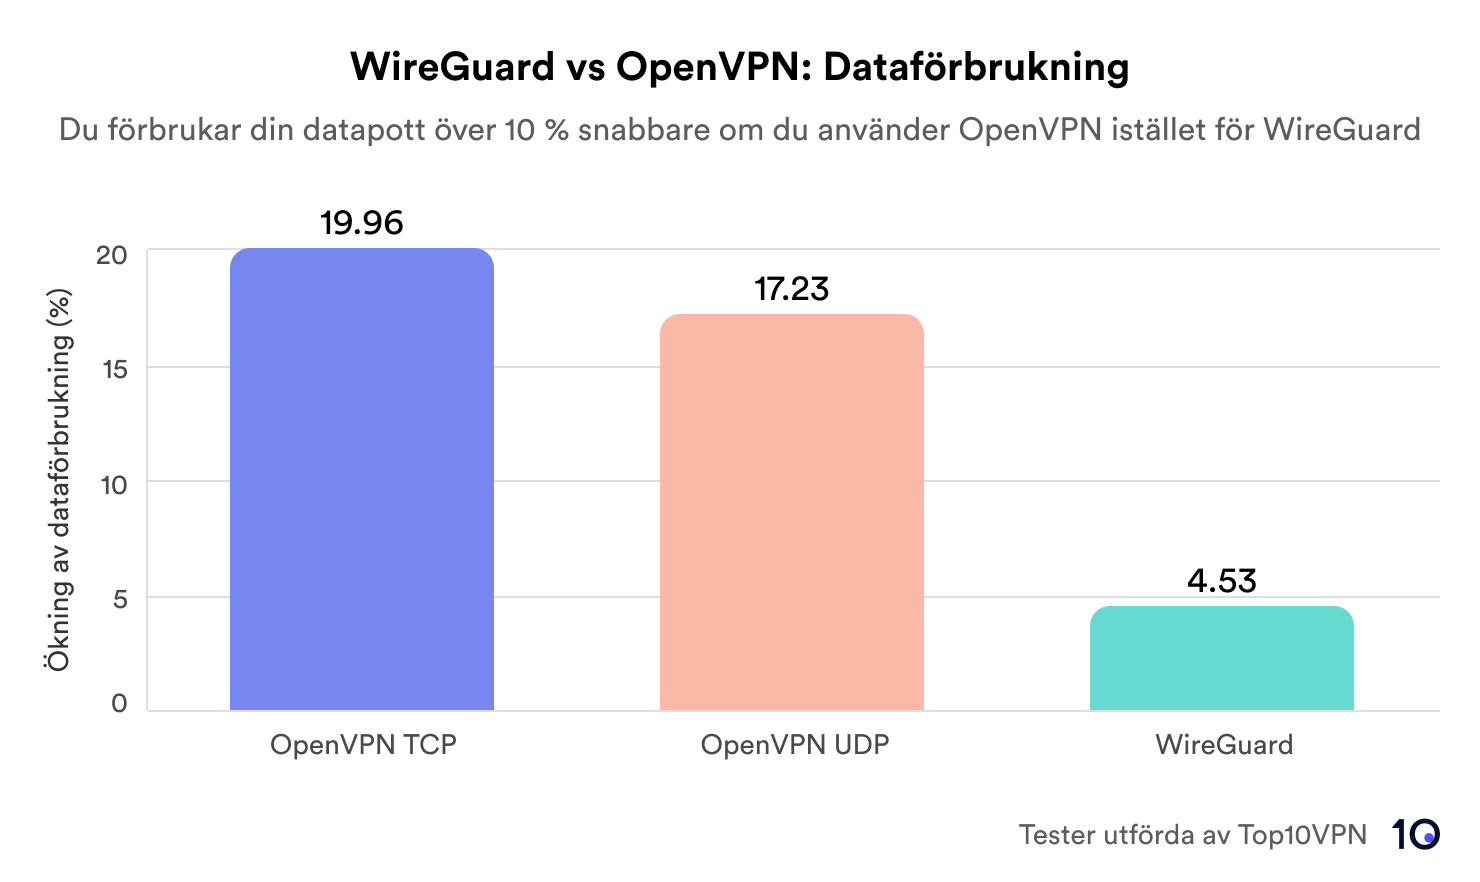 stapeldiagram som visar dataförbrukningen för OpenVPN TCP, OpenVPN UDP och WireGuard